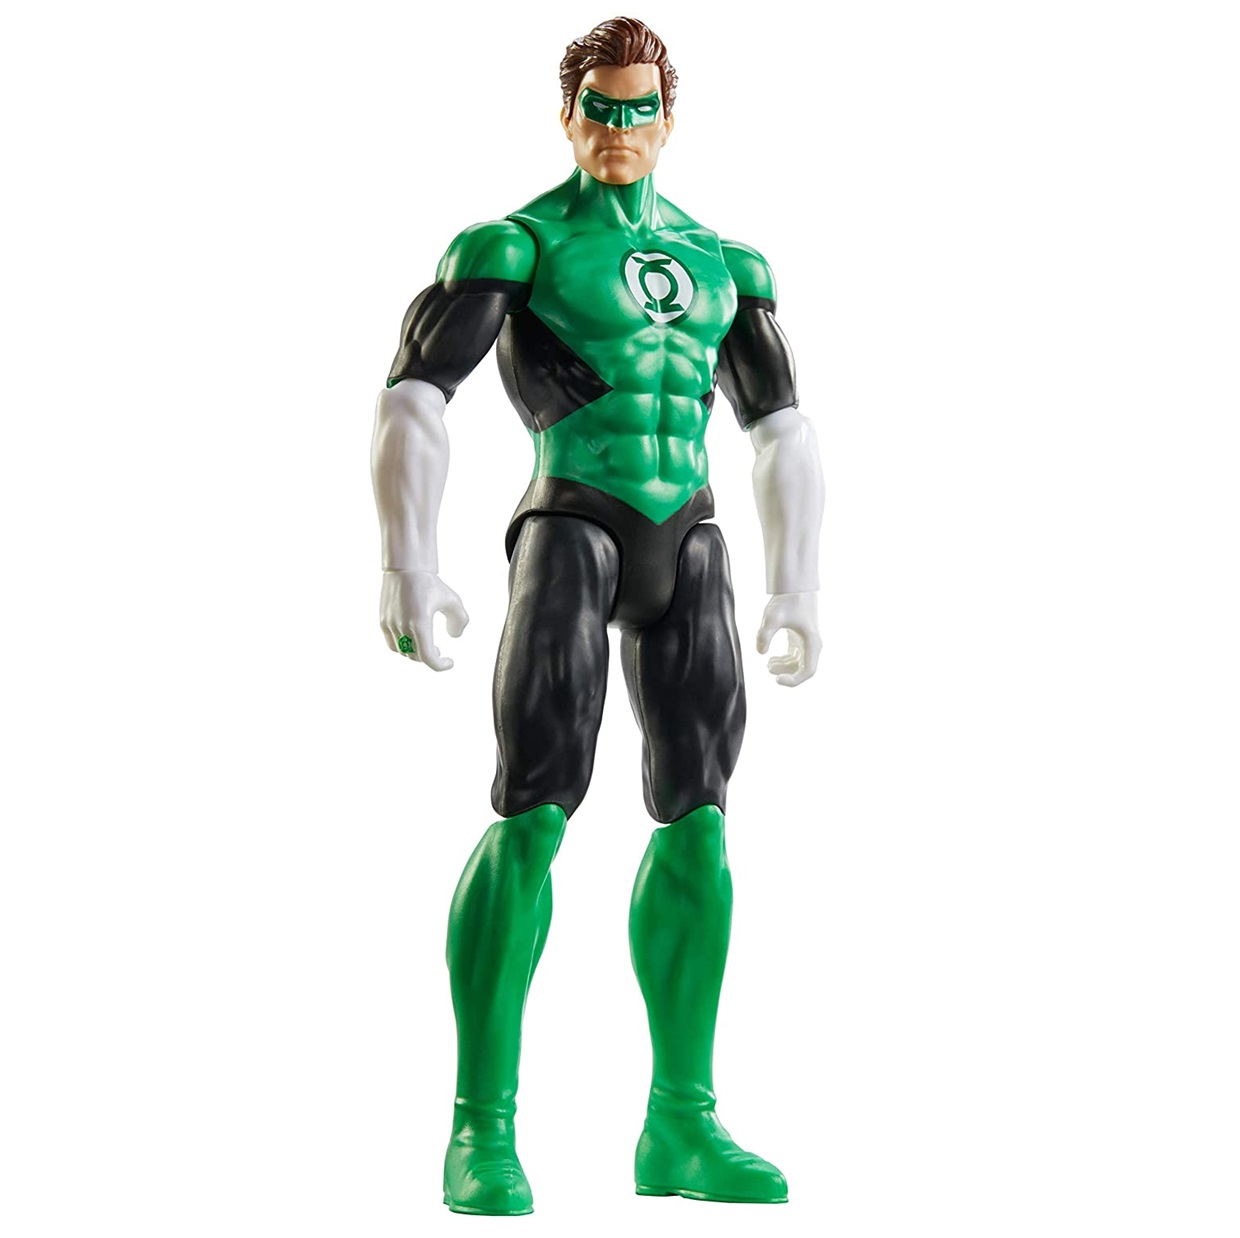 Green Lantern Figura Dc Justice League True Moves 12 PuLG